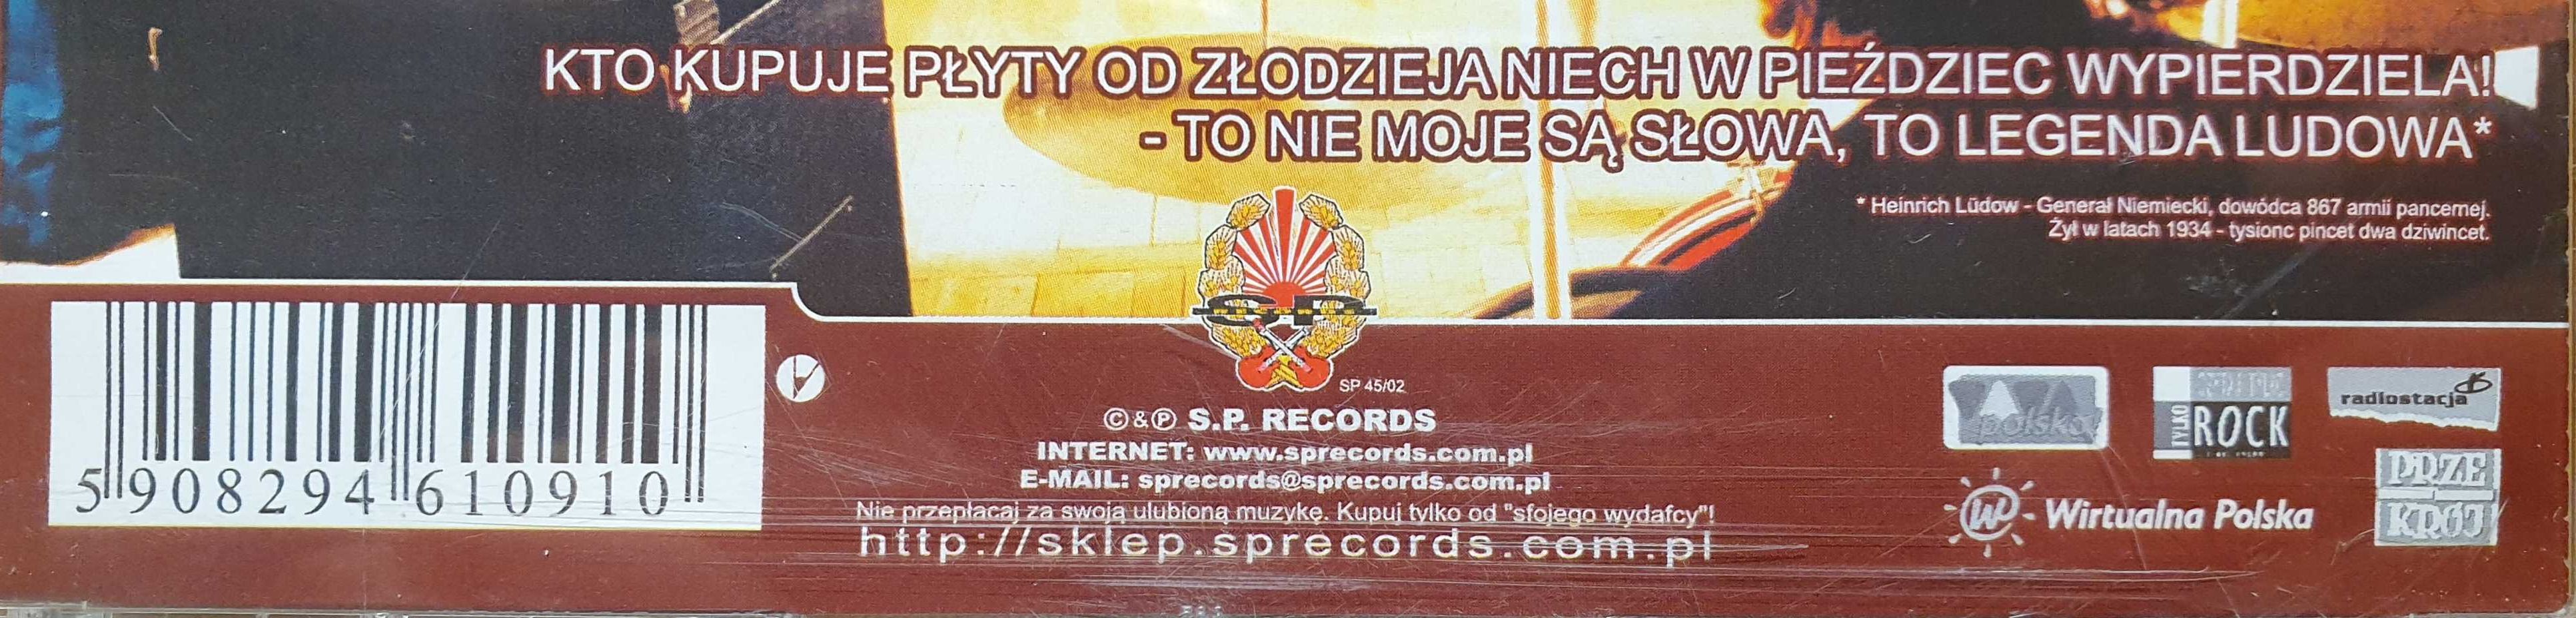 KNŻ kaenżet występ KULT Kazik Staszewski 2 audio CD najnowsza reedycja